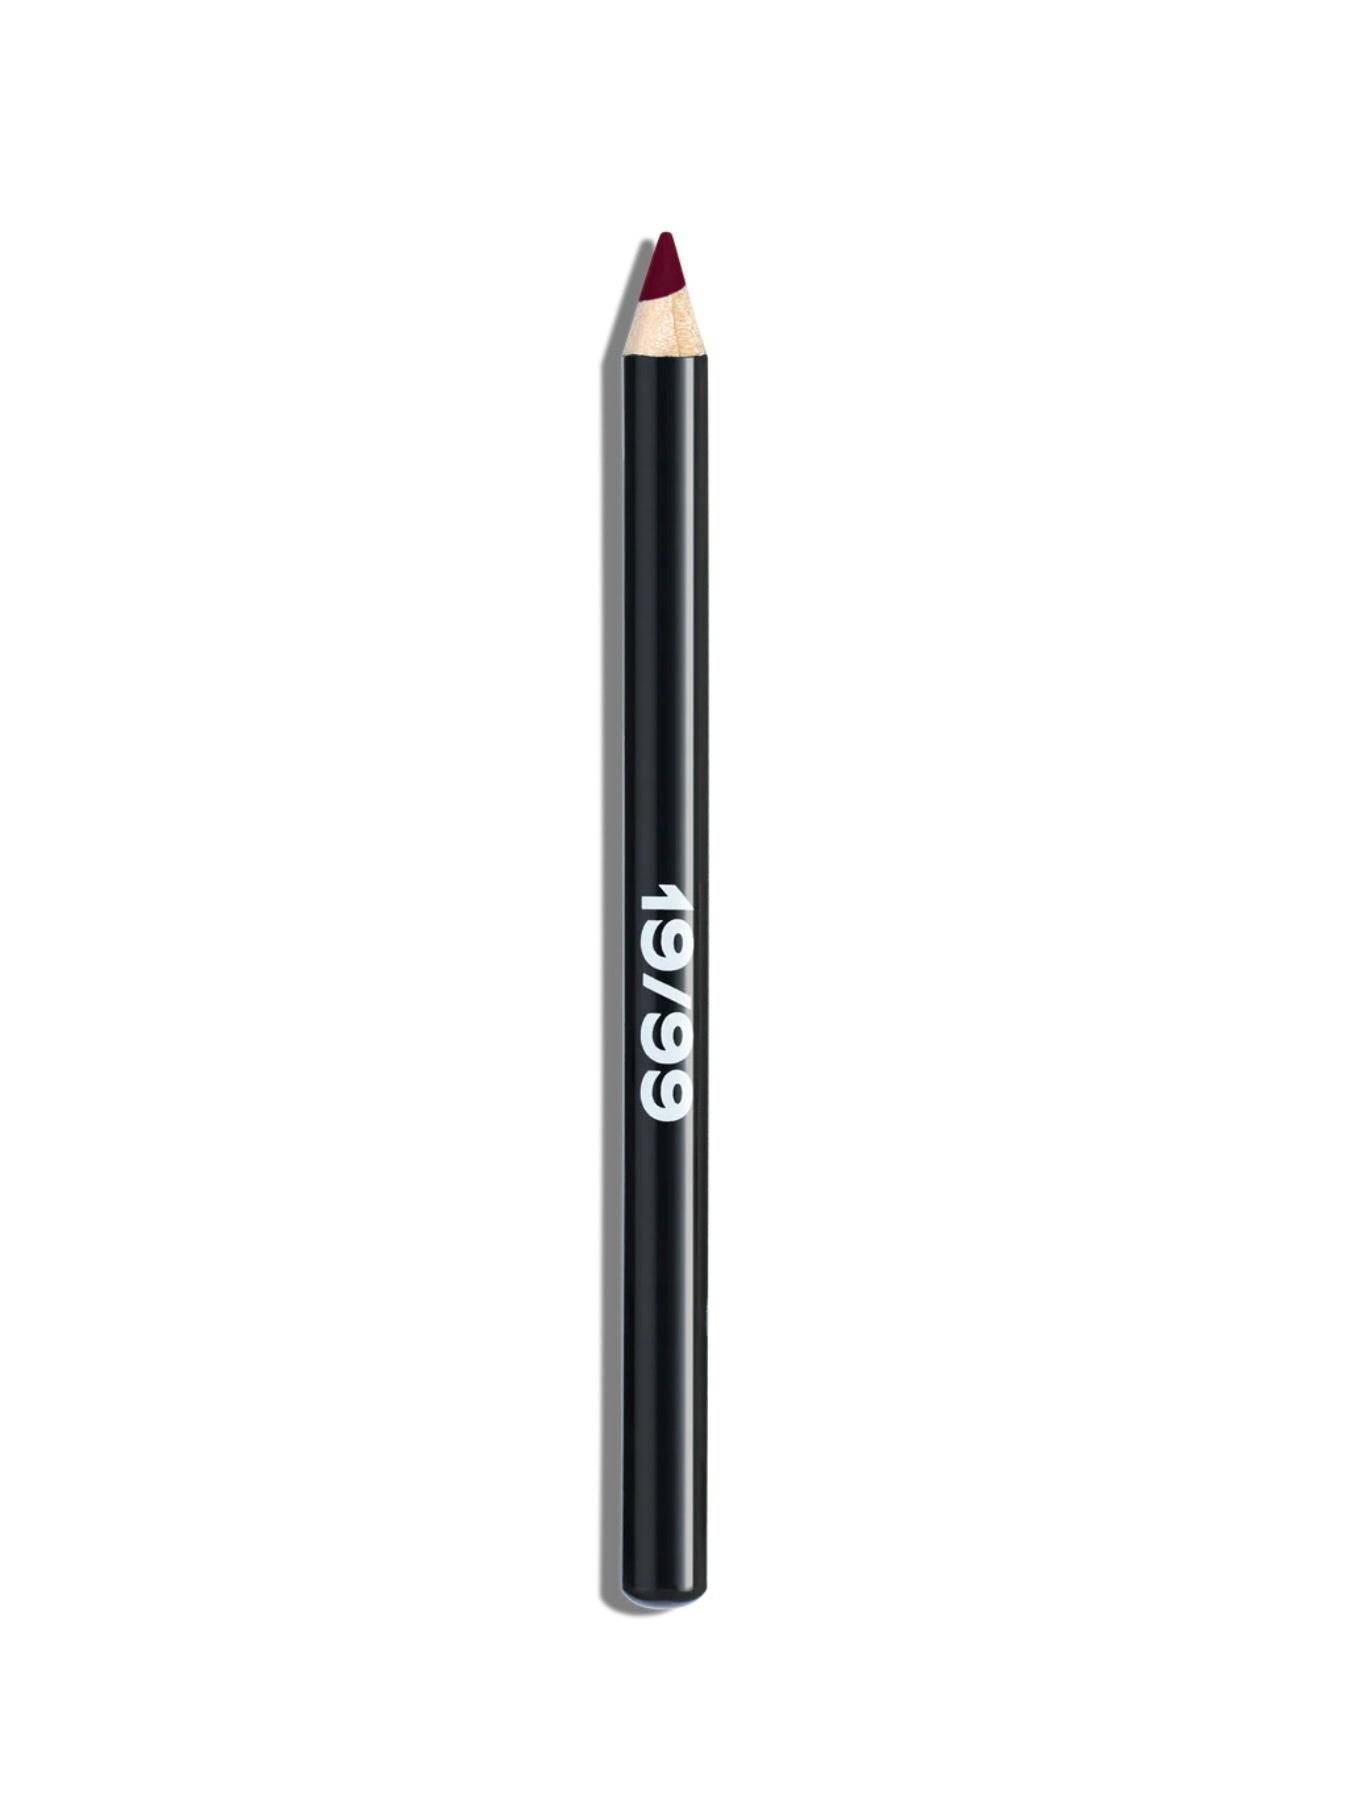 Precision Colour Pencil in Bor by 19/99